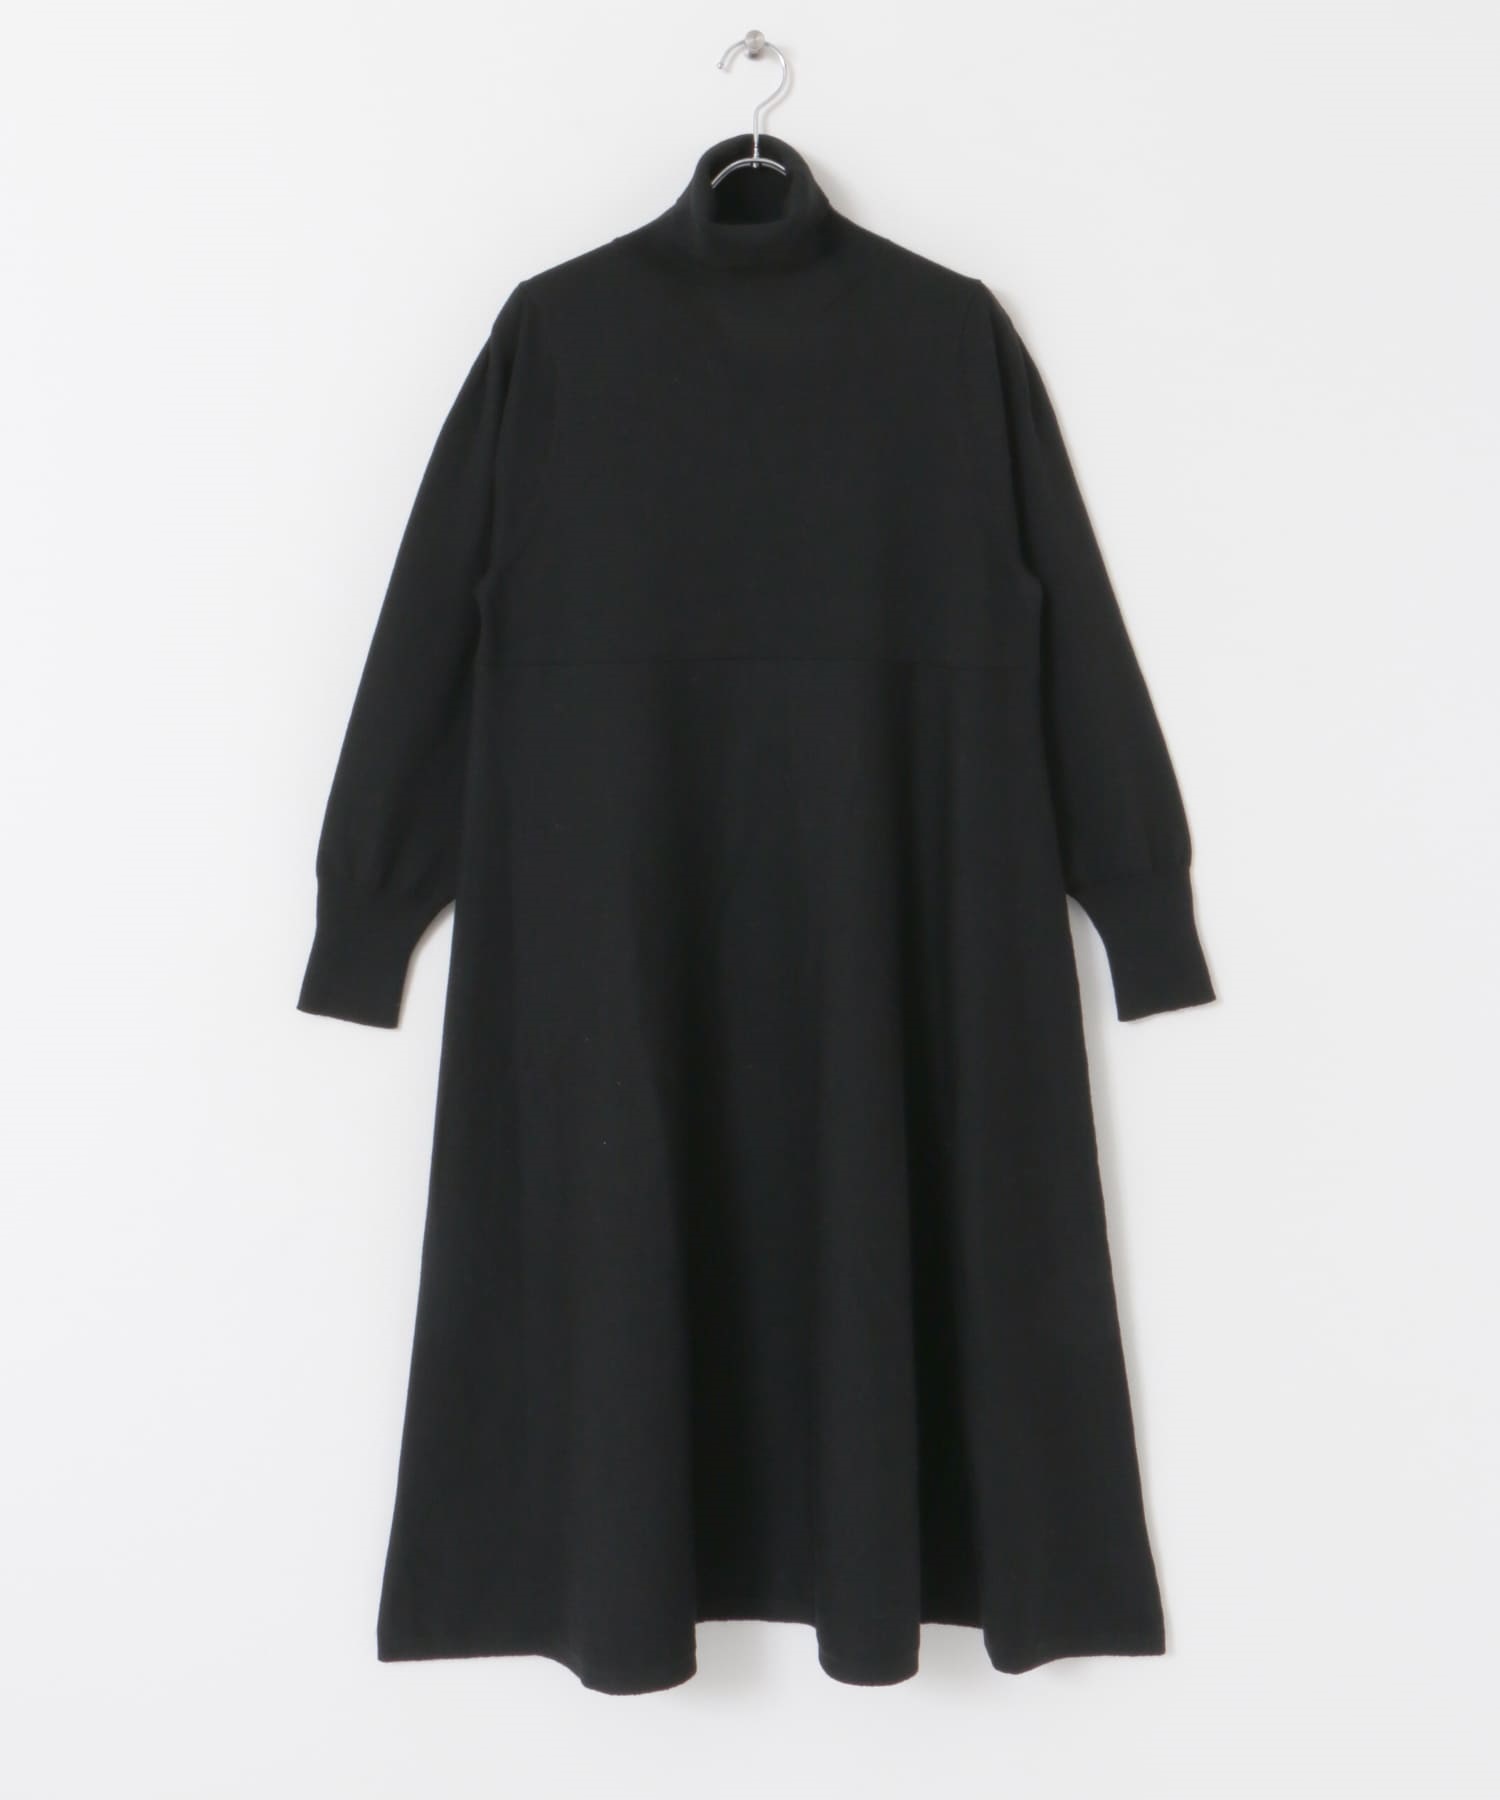 高領傘狀洋裝(黑色-FREE-BLACK)